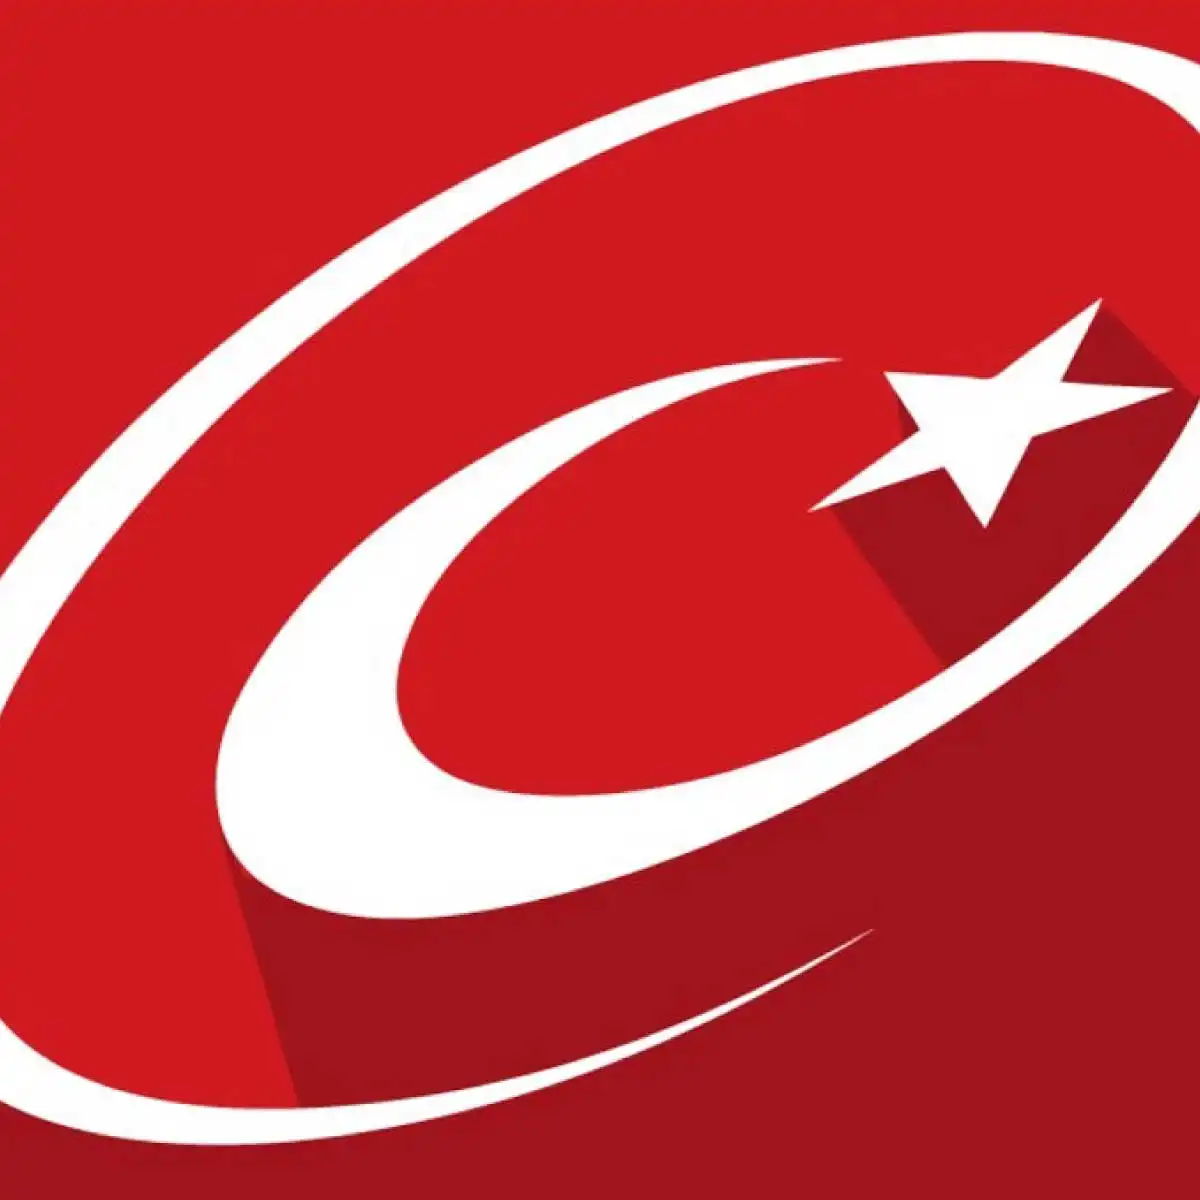 Türkiye'de Son Dönemde Popüler Olmuş Trend Topicler